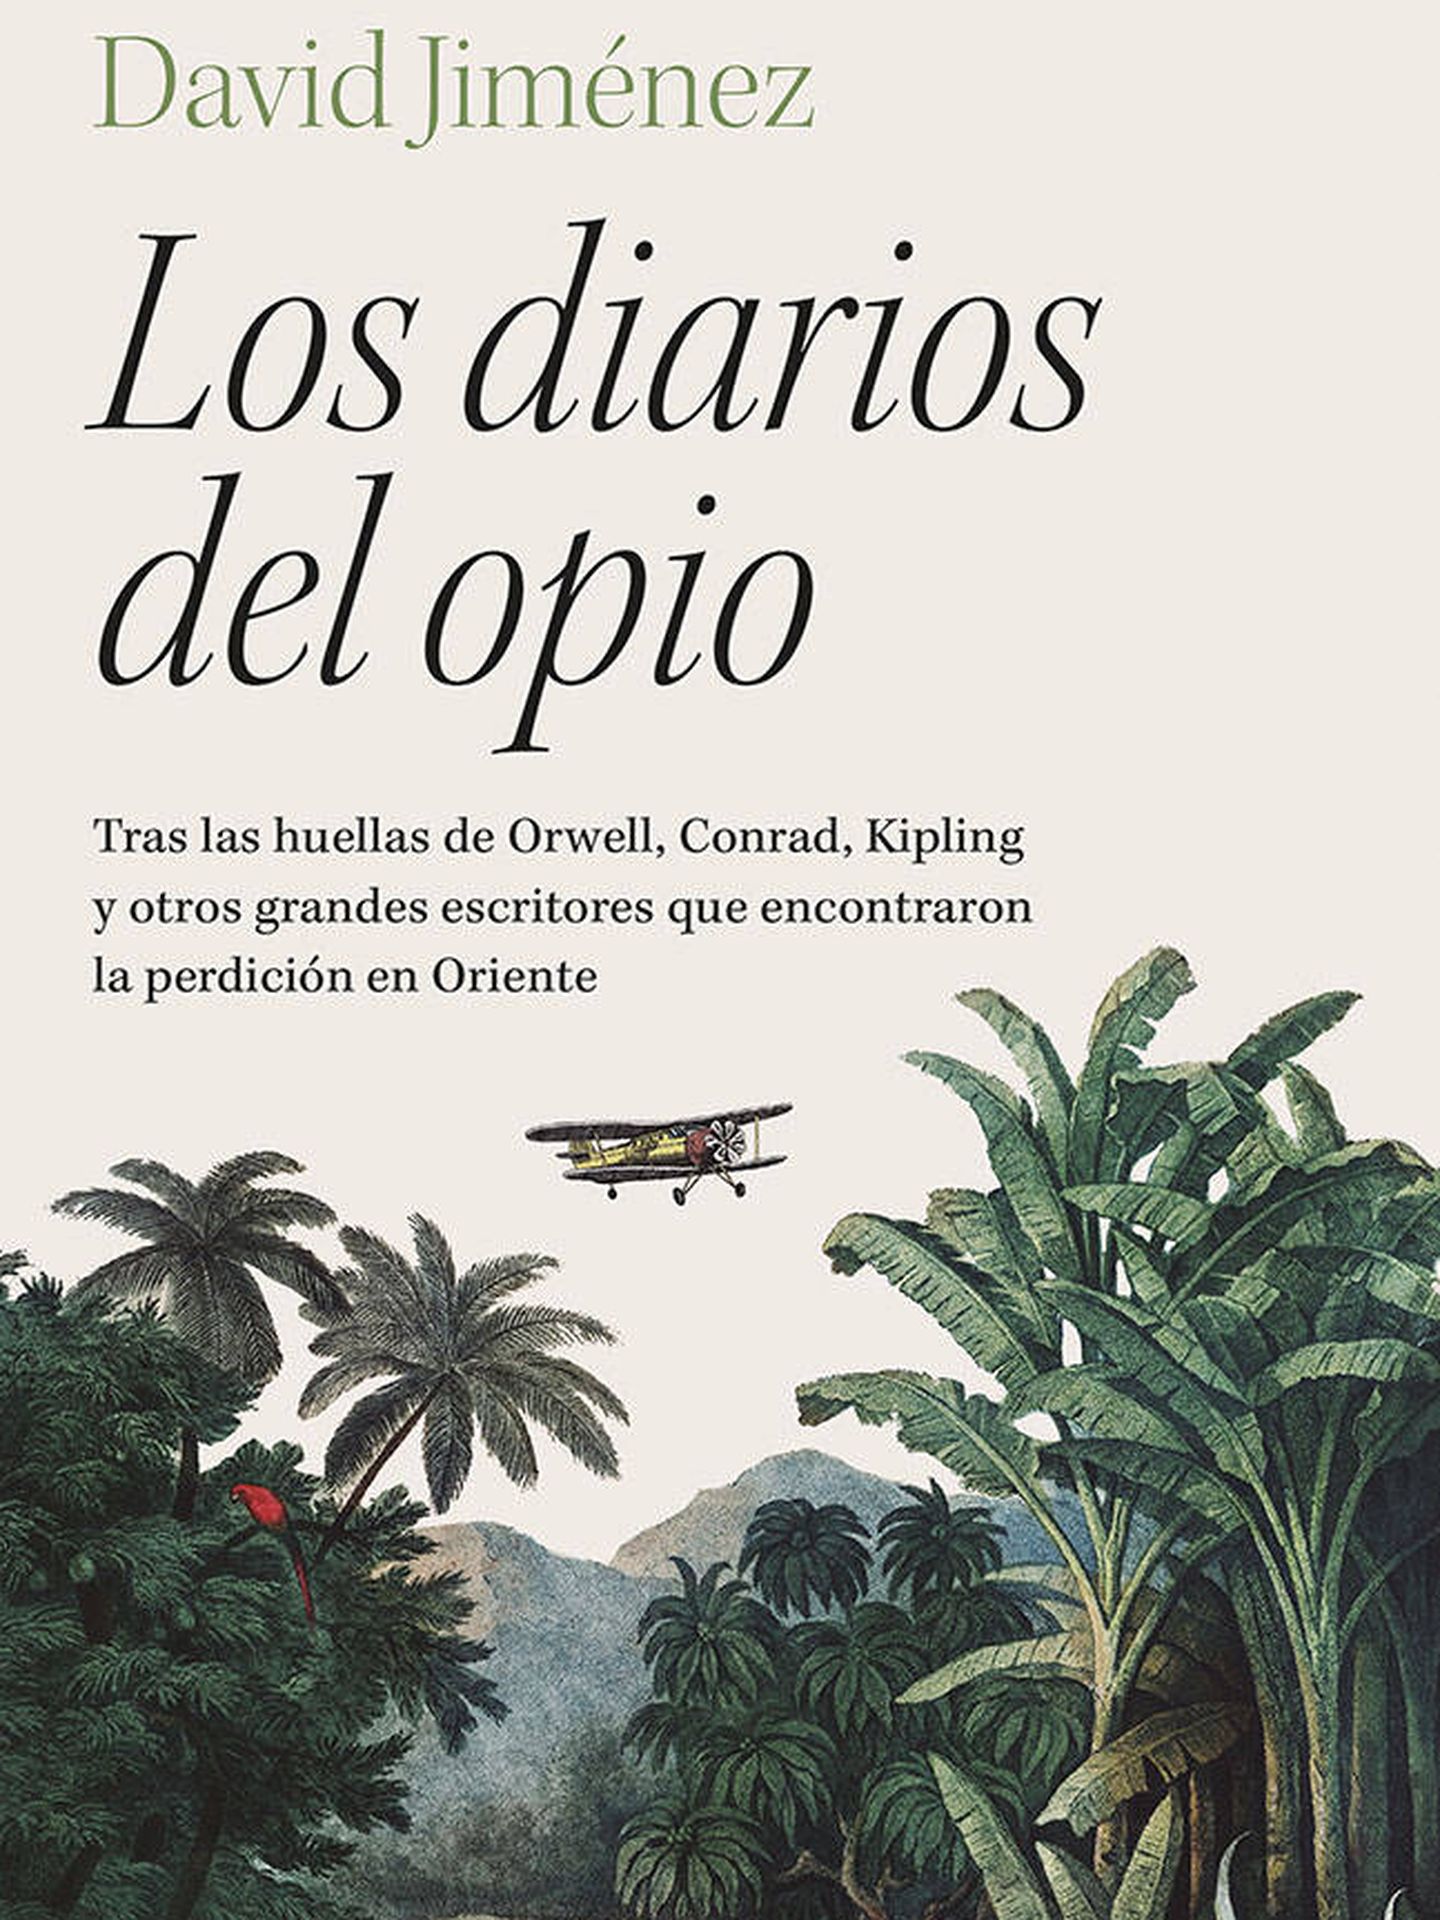 Portada de 'Los diarios del opio', el libro en el que David Jiménez sigue las huellas en Oriente de Orwell, Conrad, Kipling y otros grandes escritores.